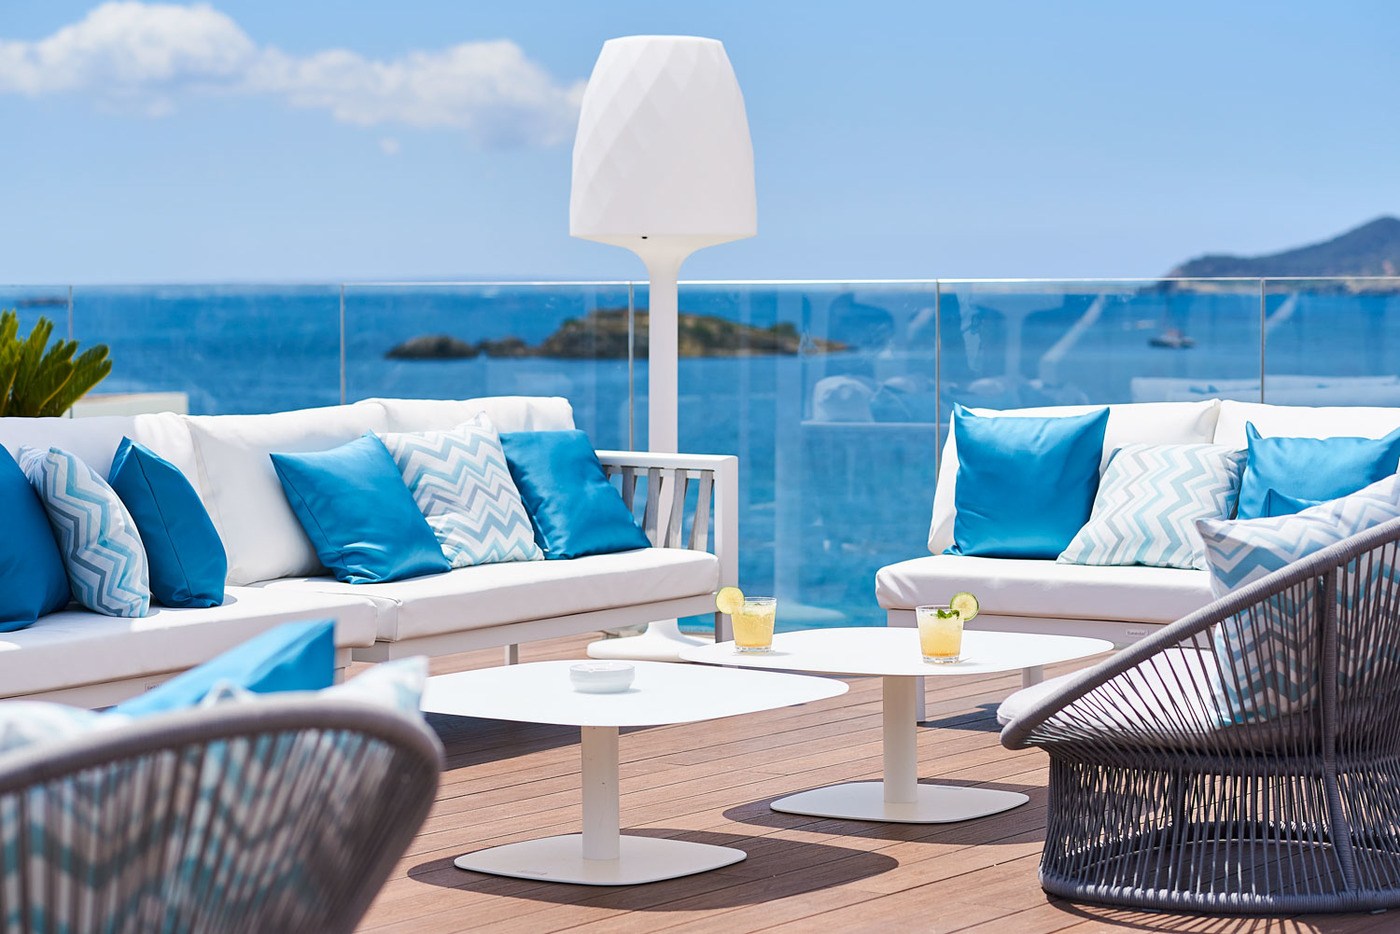 imagen 1 de El Eurostars Ibiza abre sus habitaciones y el verano se tiñe de blanco y azul.